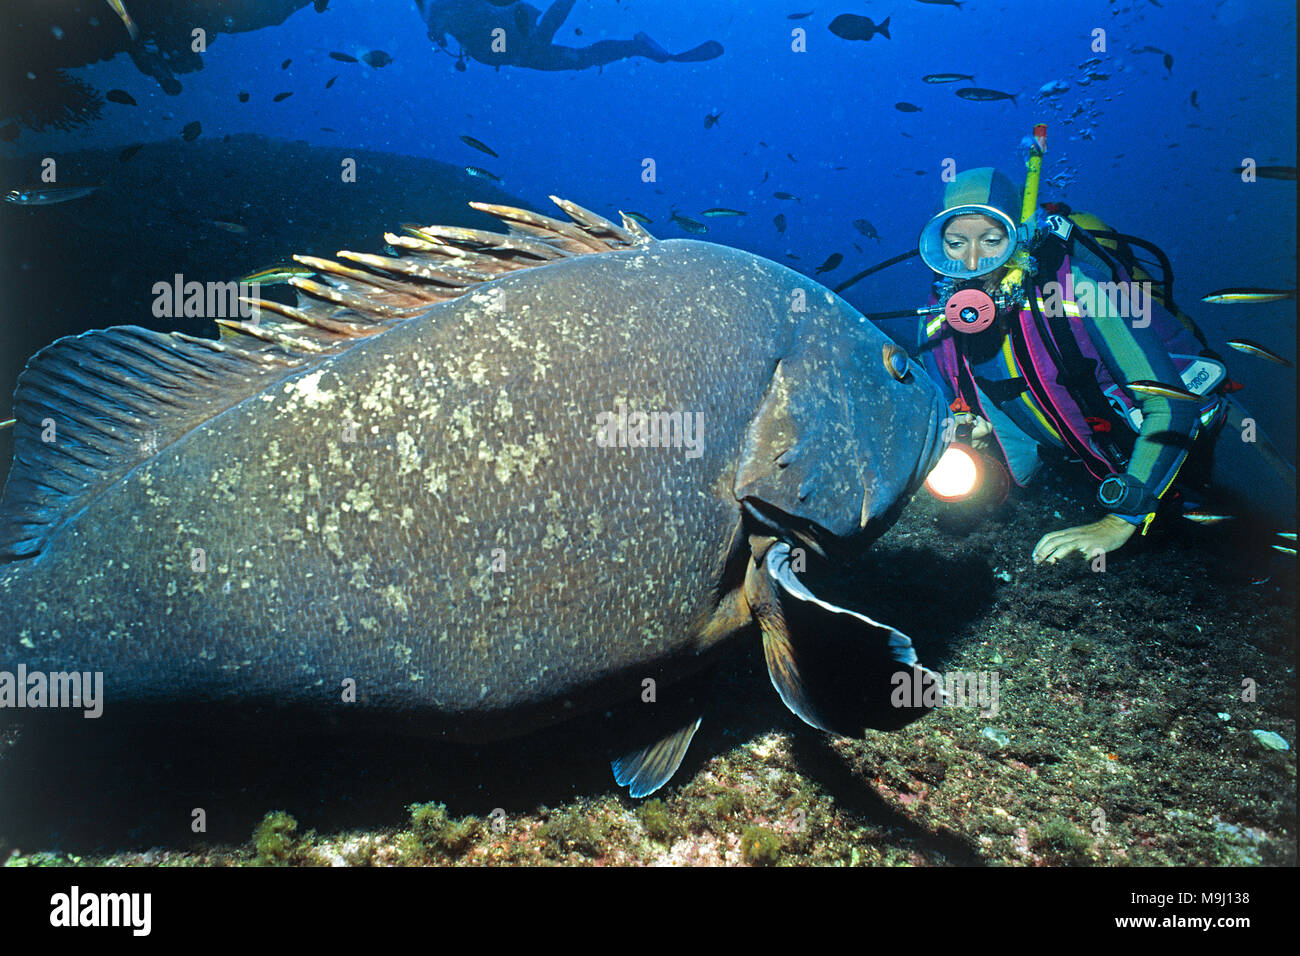 Scuba Diver et Dusky grouper, Epinephelus marginatus (mérou commun), Iles Lavezzi, Corse, France, Europe, mer Méditerranée Banque D'Images